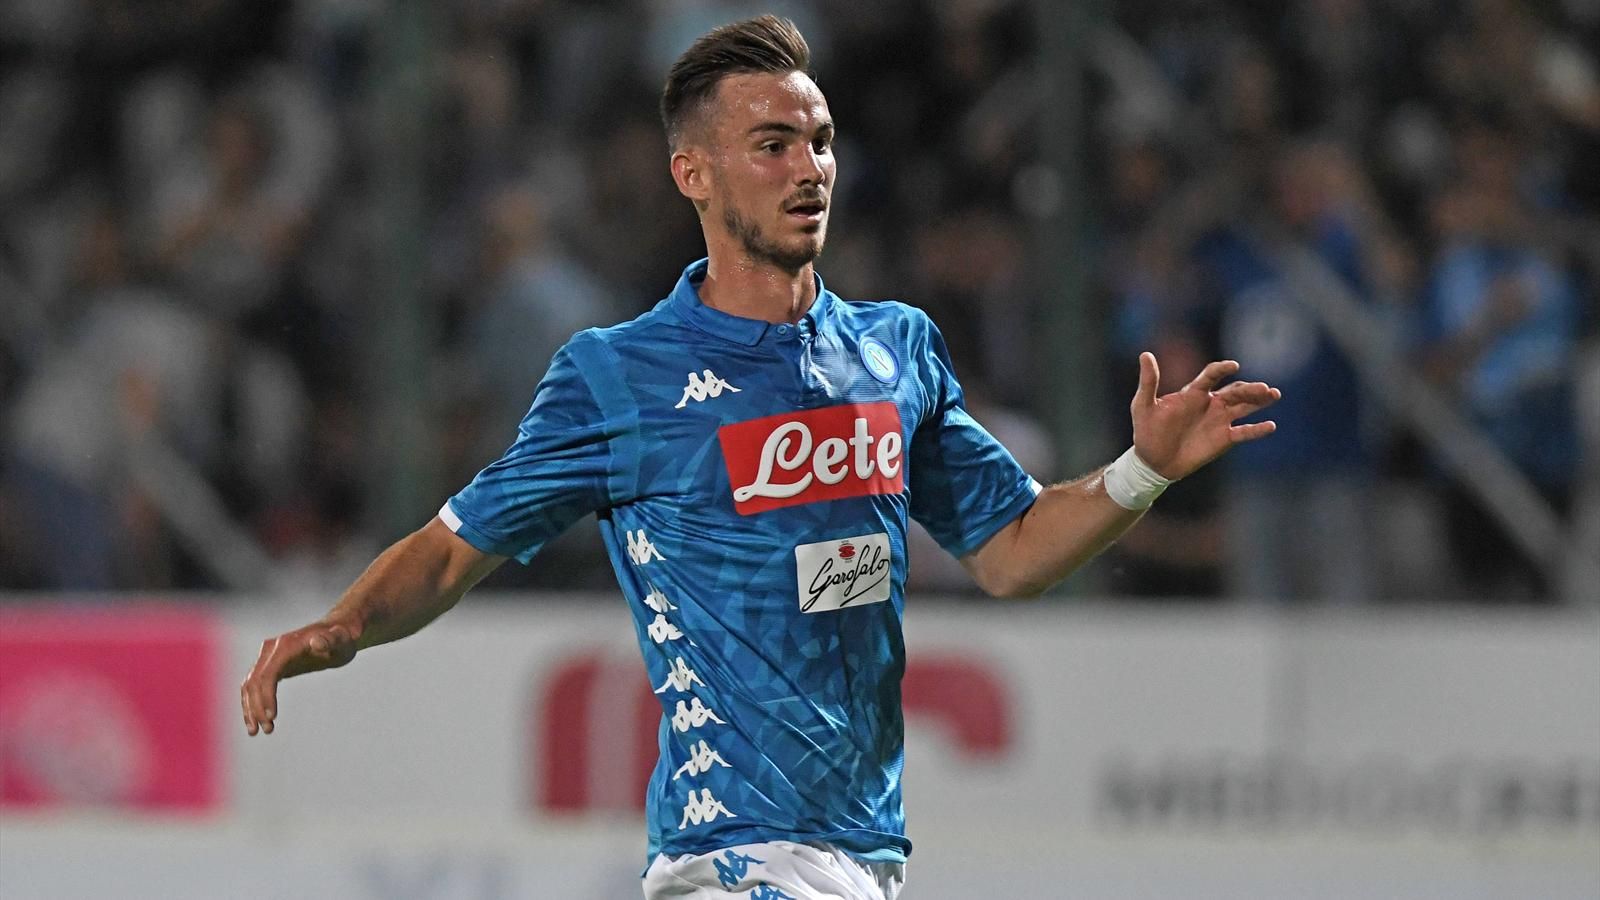 Udinese-Napoli 0-1, il primo tempo: l’arcobaleno di Fabian, poi un match equilibrato